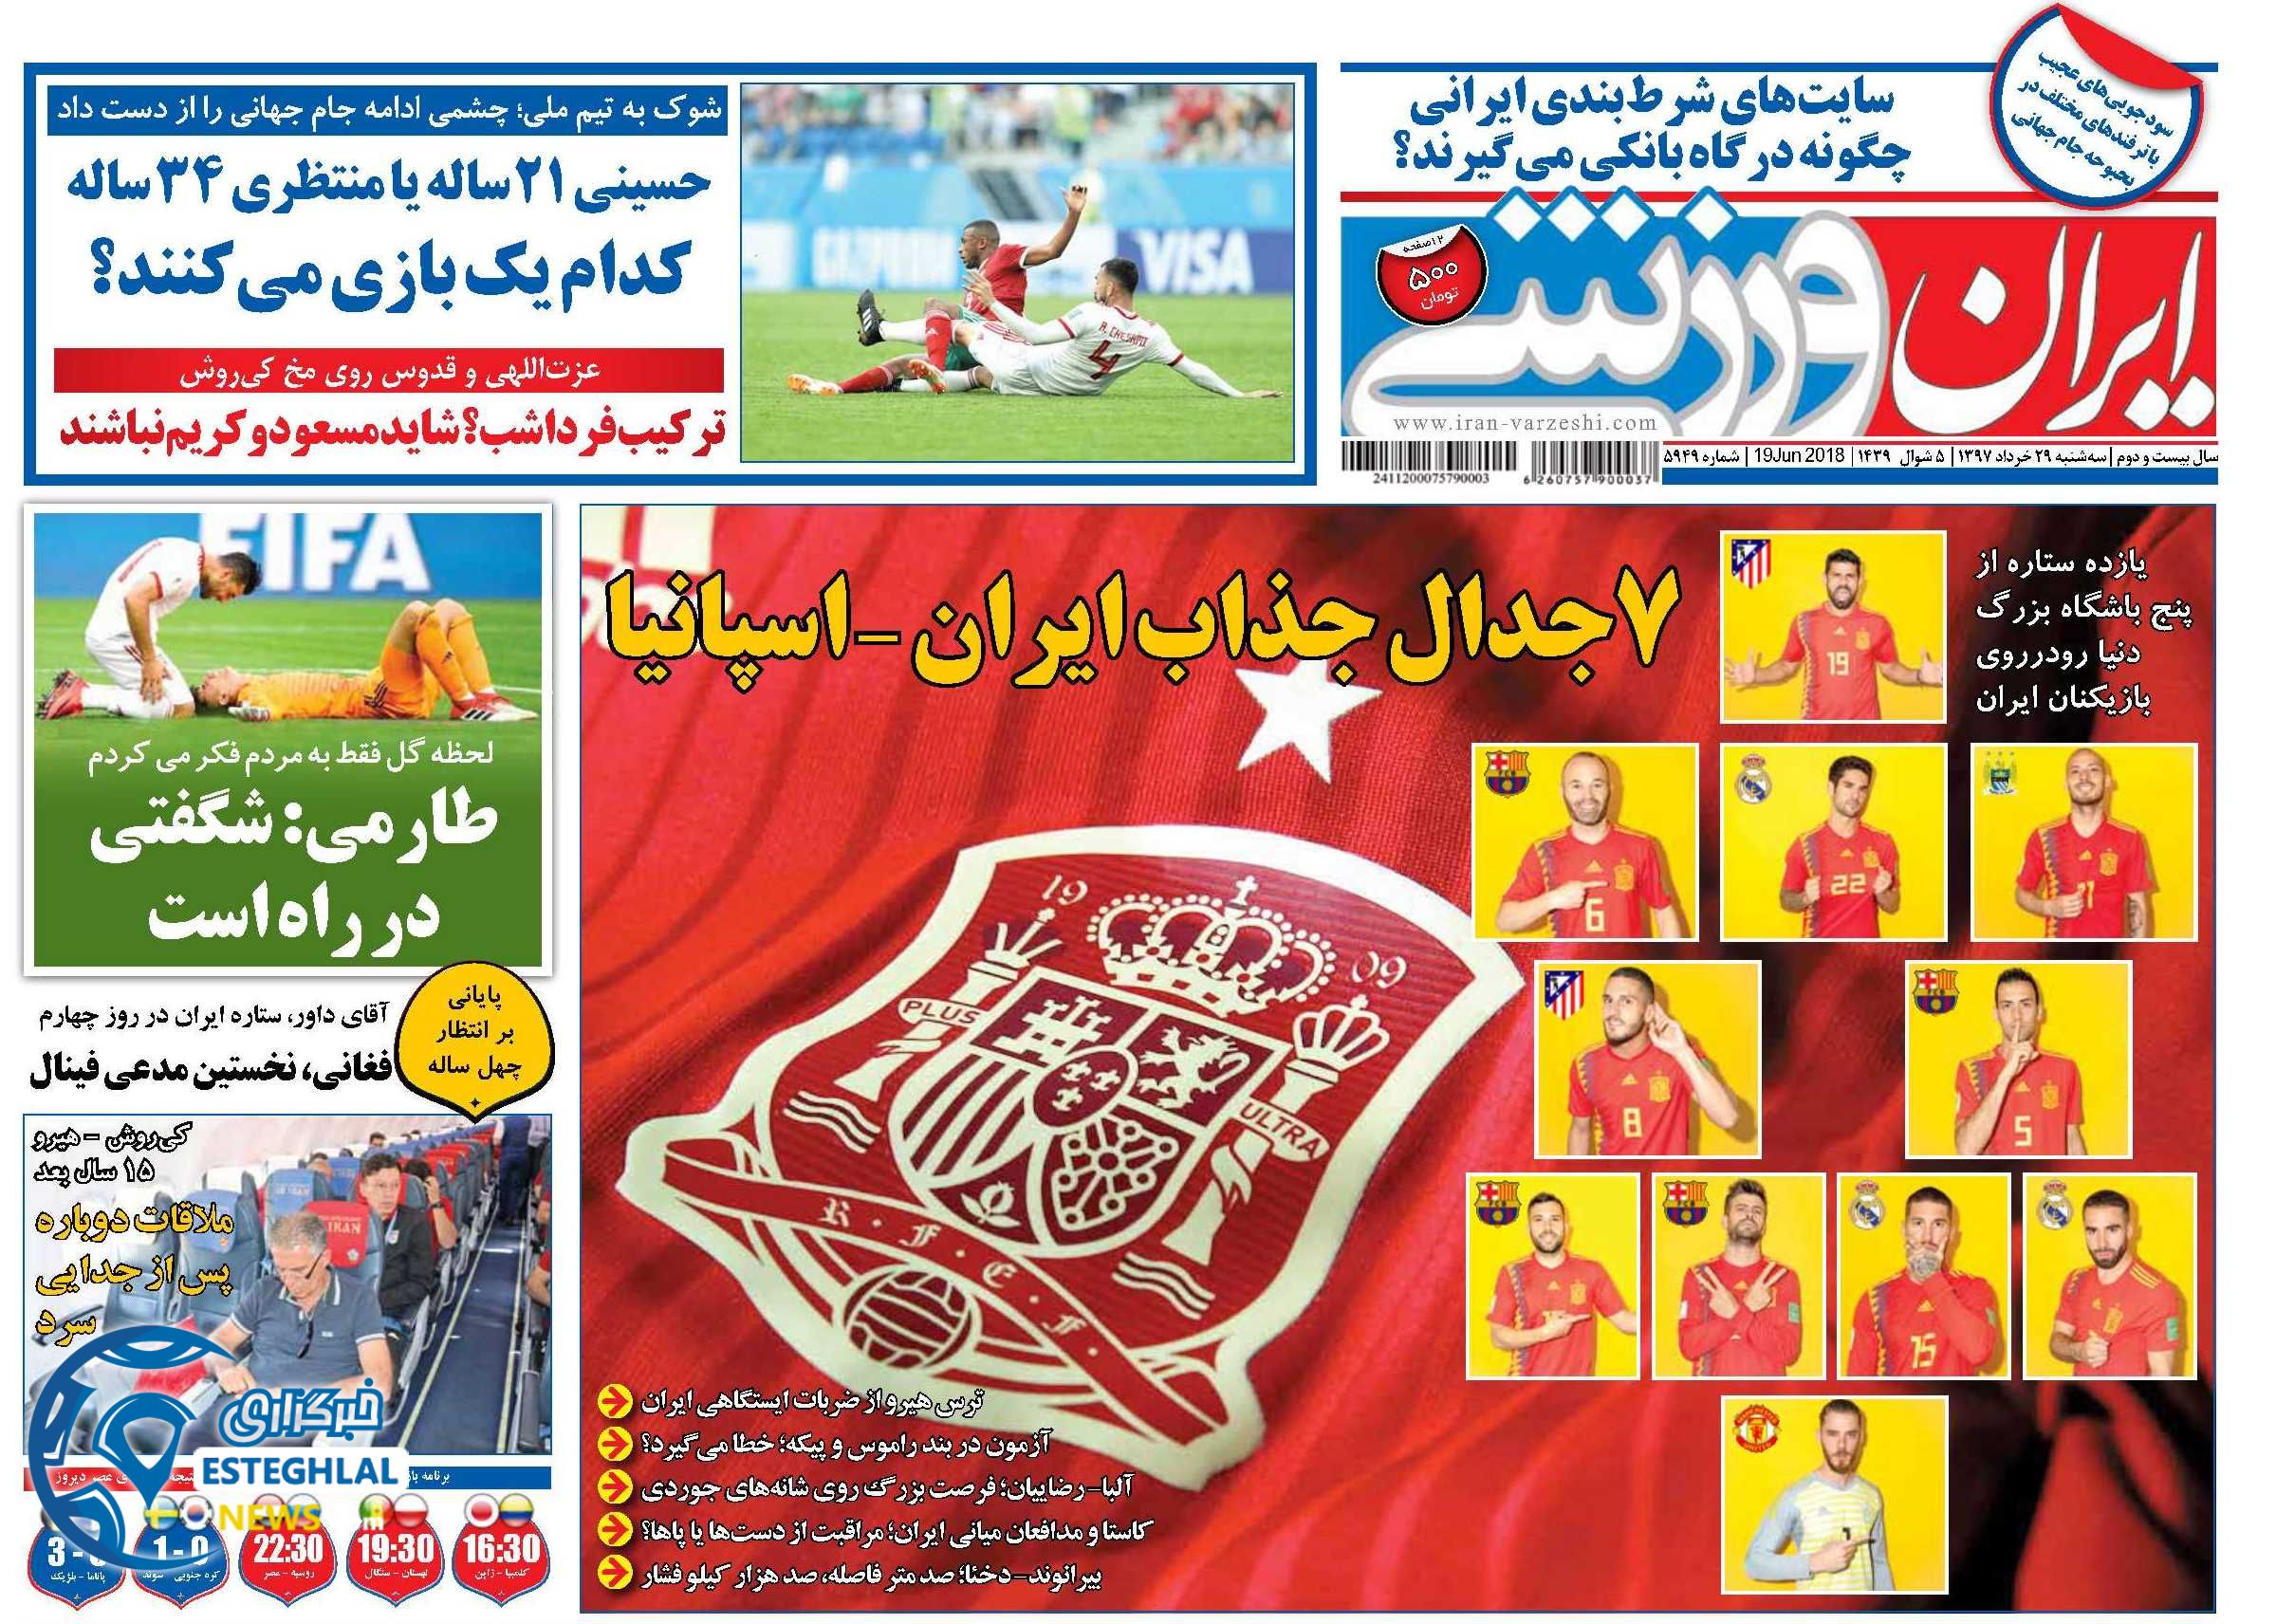   روزنامه ایران ورزشی سه شنبه 29 خرداد 1397       